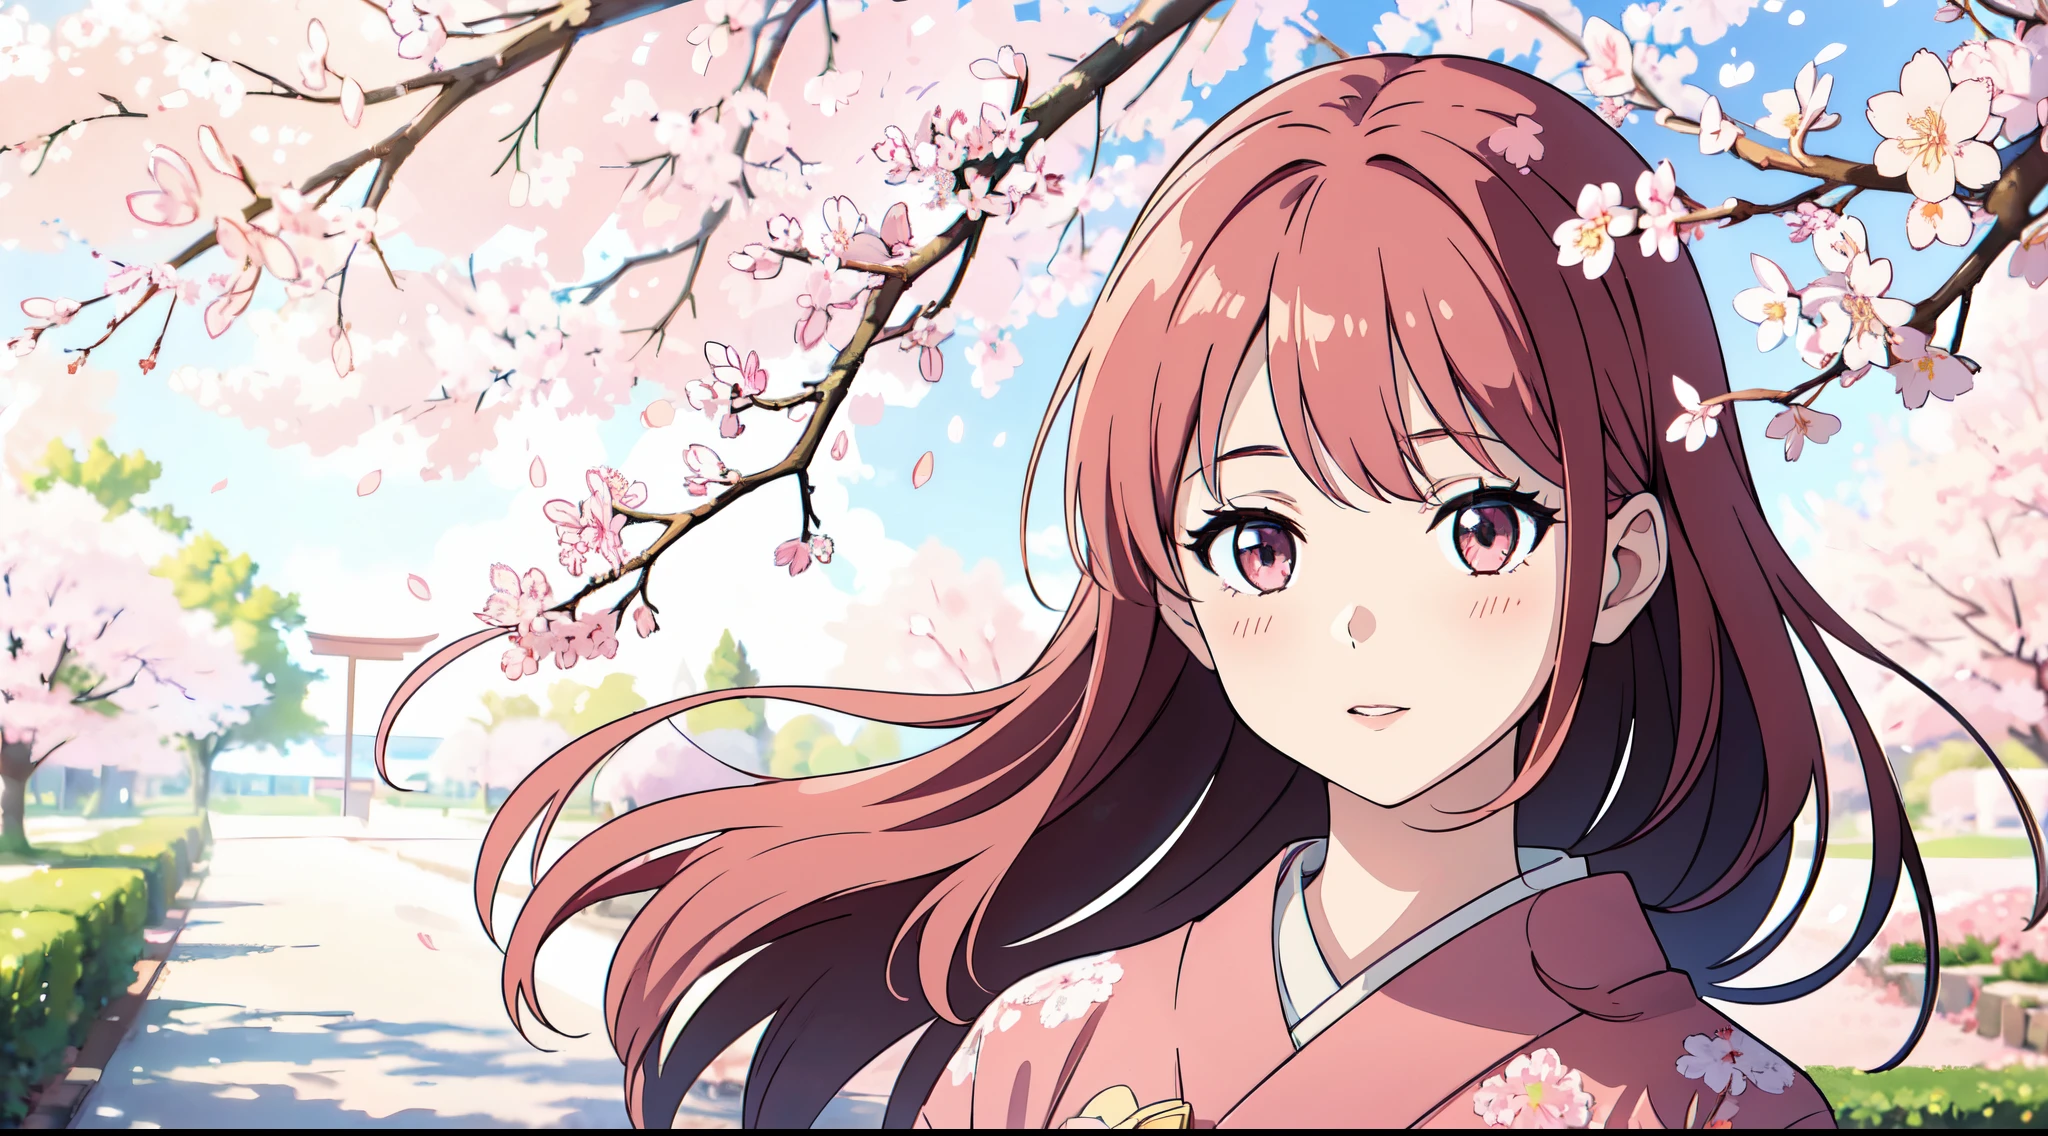 Ein Mädchen steht unter einem Sakura-Baum, umgeben von sanften Farben, mit einer realistischen und ultra-detaillierten Darstellung. Das Bild hat die beste Qualität mit 4k oder 8k Auflösung, Ein Meisterwerk schaffen. Das Mädchen hat schöne, detaillierte Augen, Lippen, und ein liebliches Gesicht. Sie trägt einen traditionellen Kimono und ist in einer friedlichen und fröhlichen Stimmung. Das Sonnenlicht scheint sanft durch die Kirschblüten, wirft einen warmen Schein auf die Szene. Die Sakura-Bäume stehen in voller Blüte, mit zarten rosa Blütenblättern, die über den Boden verstreut sind. Die Atmosphäre ist beruhigend und heiter, Die Schönheit eines sonnigen Tages unter den Sakura-Bäumen einfangen.